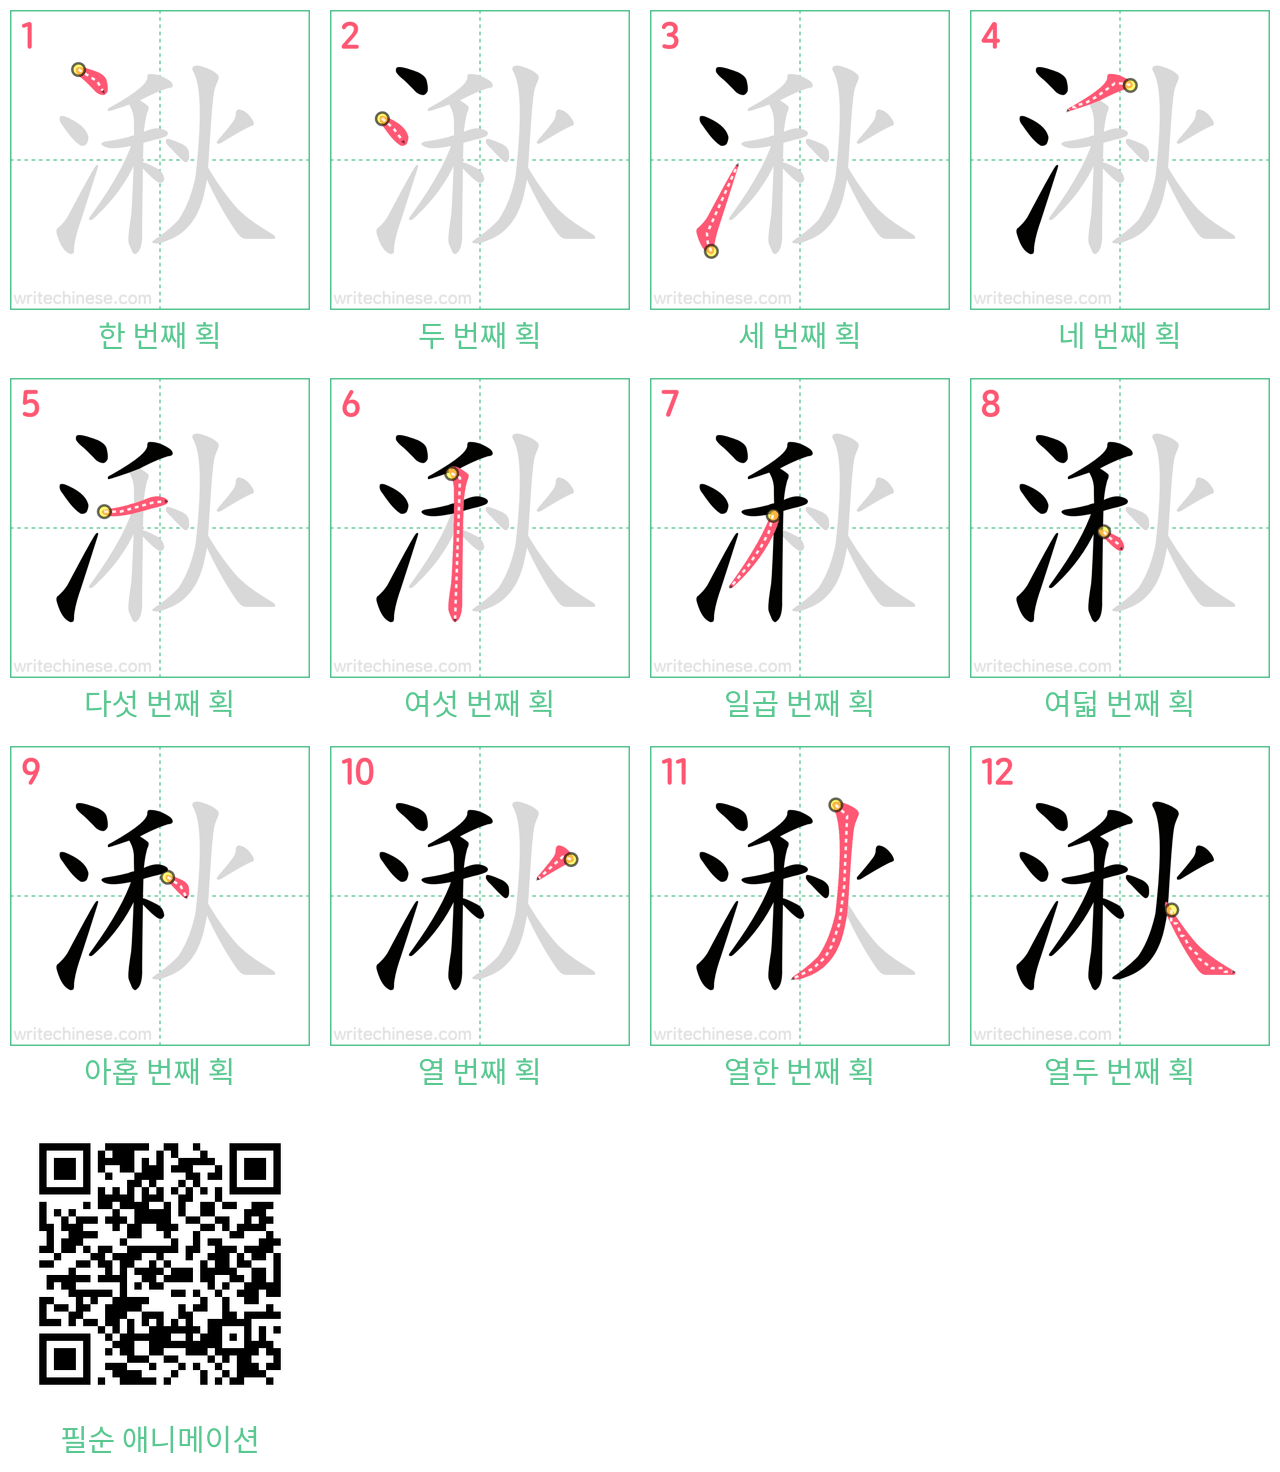 湫 step-by-step stroke order diagrams